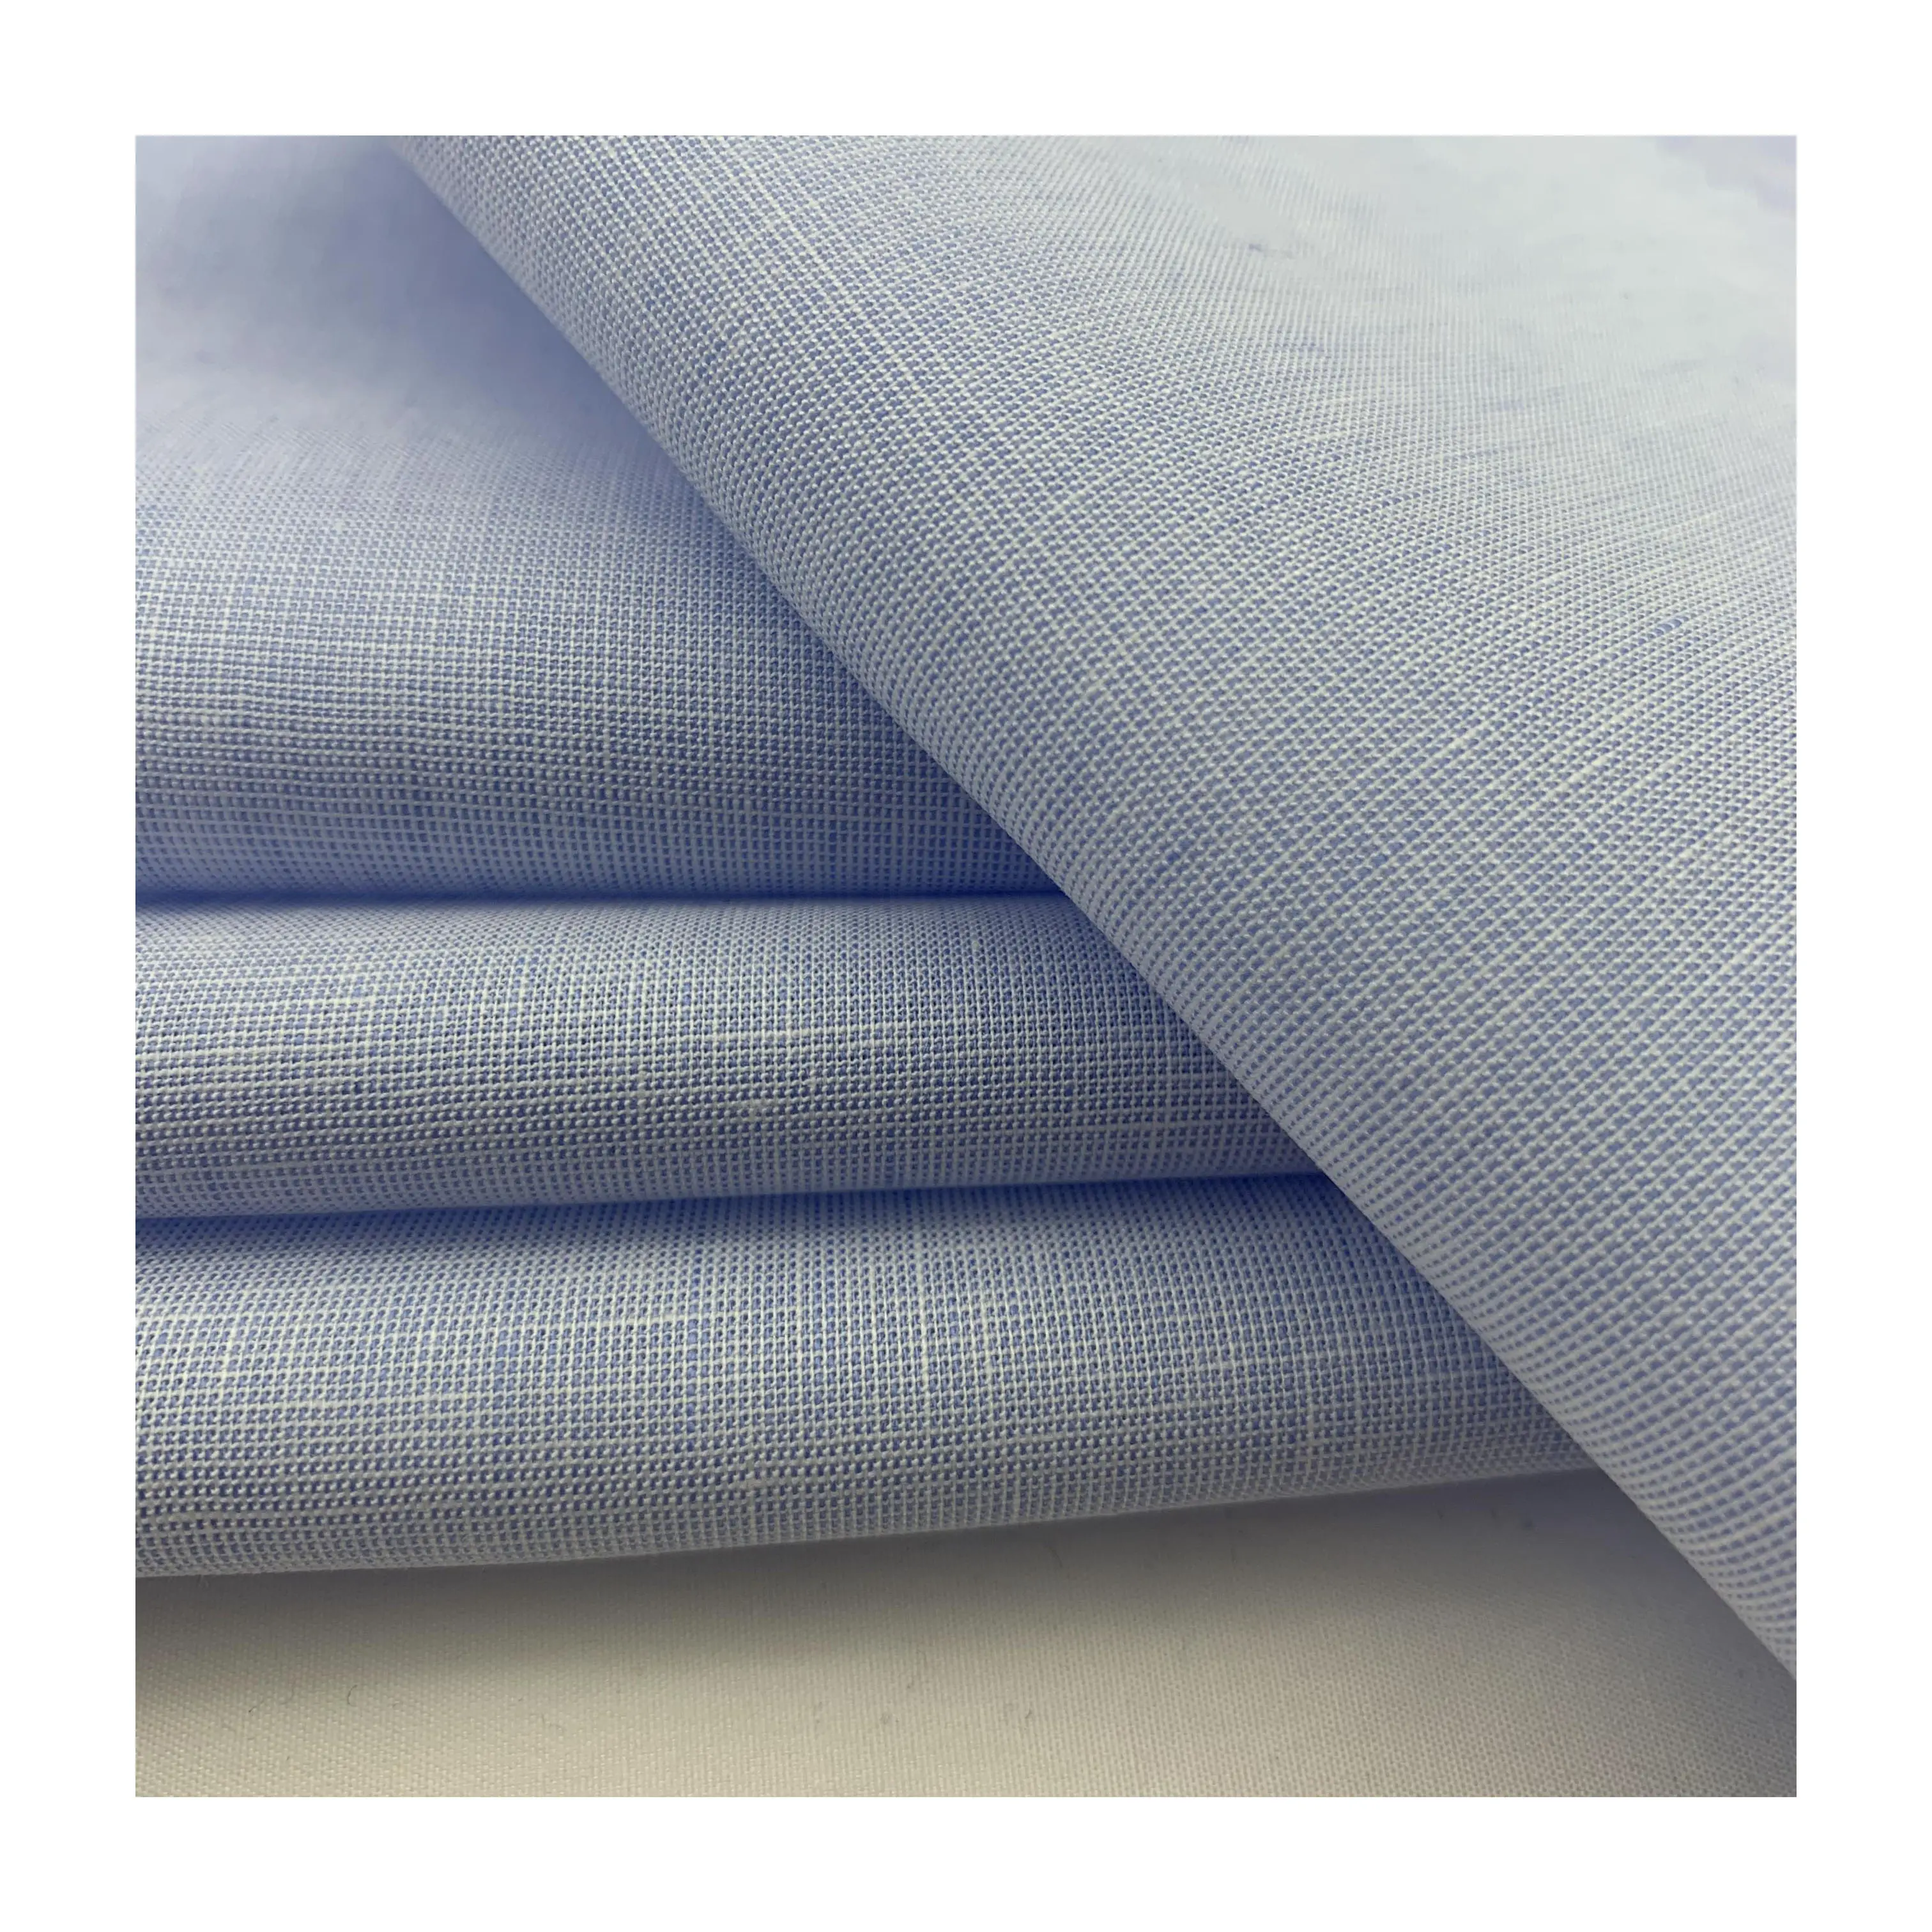 Haute qualité chemise robe matériel 60% coton 40% lin sans rides fil teint Chambray chemises tissus